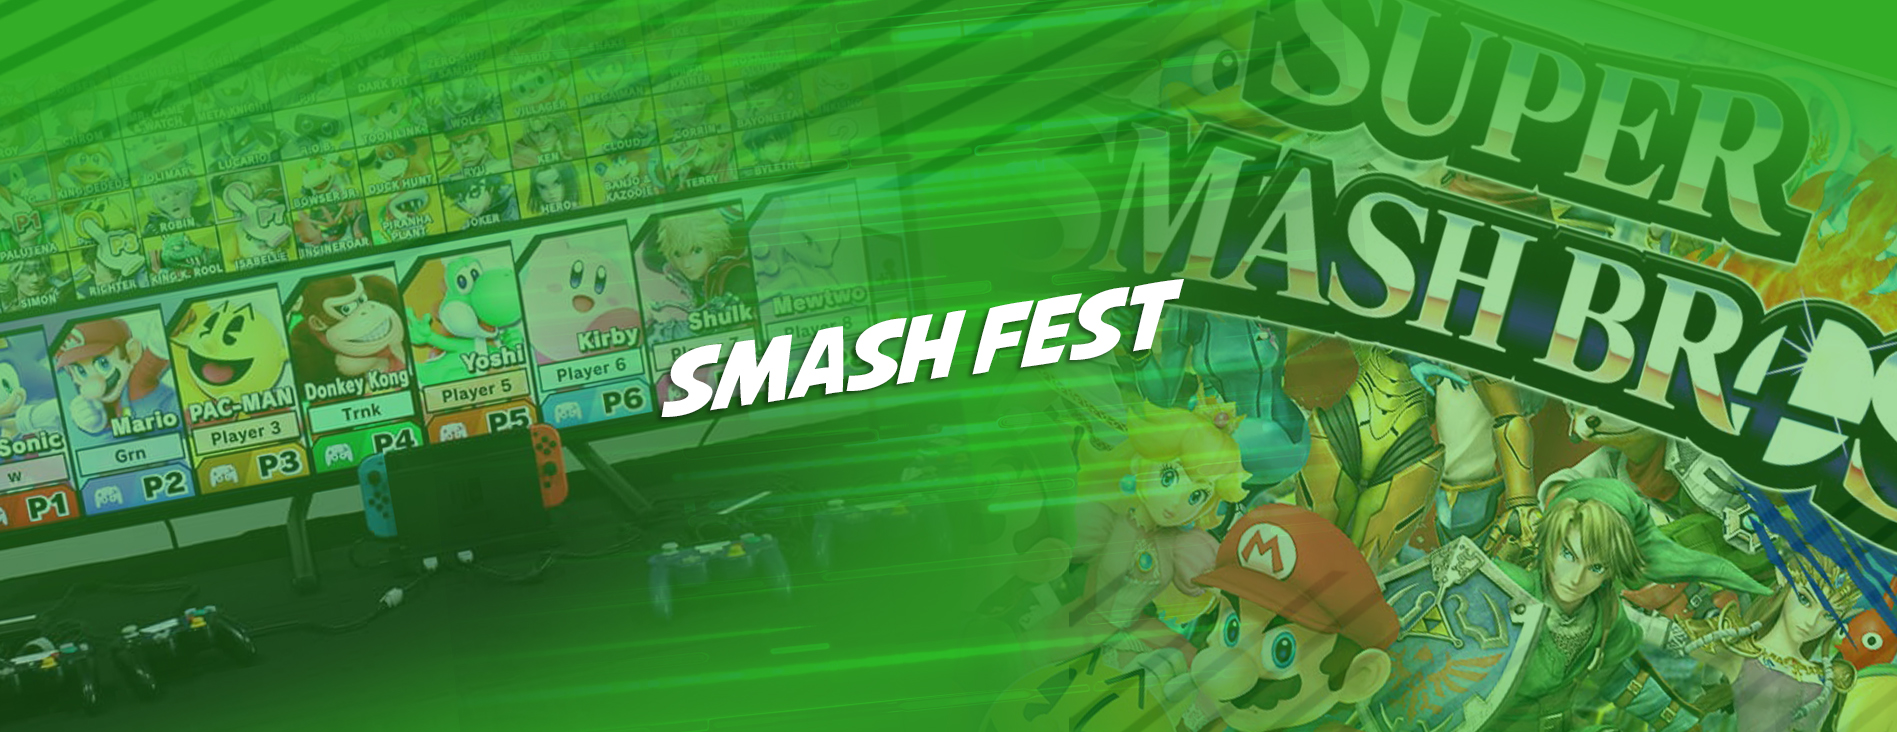 Smash Fest